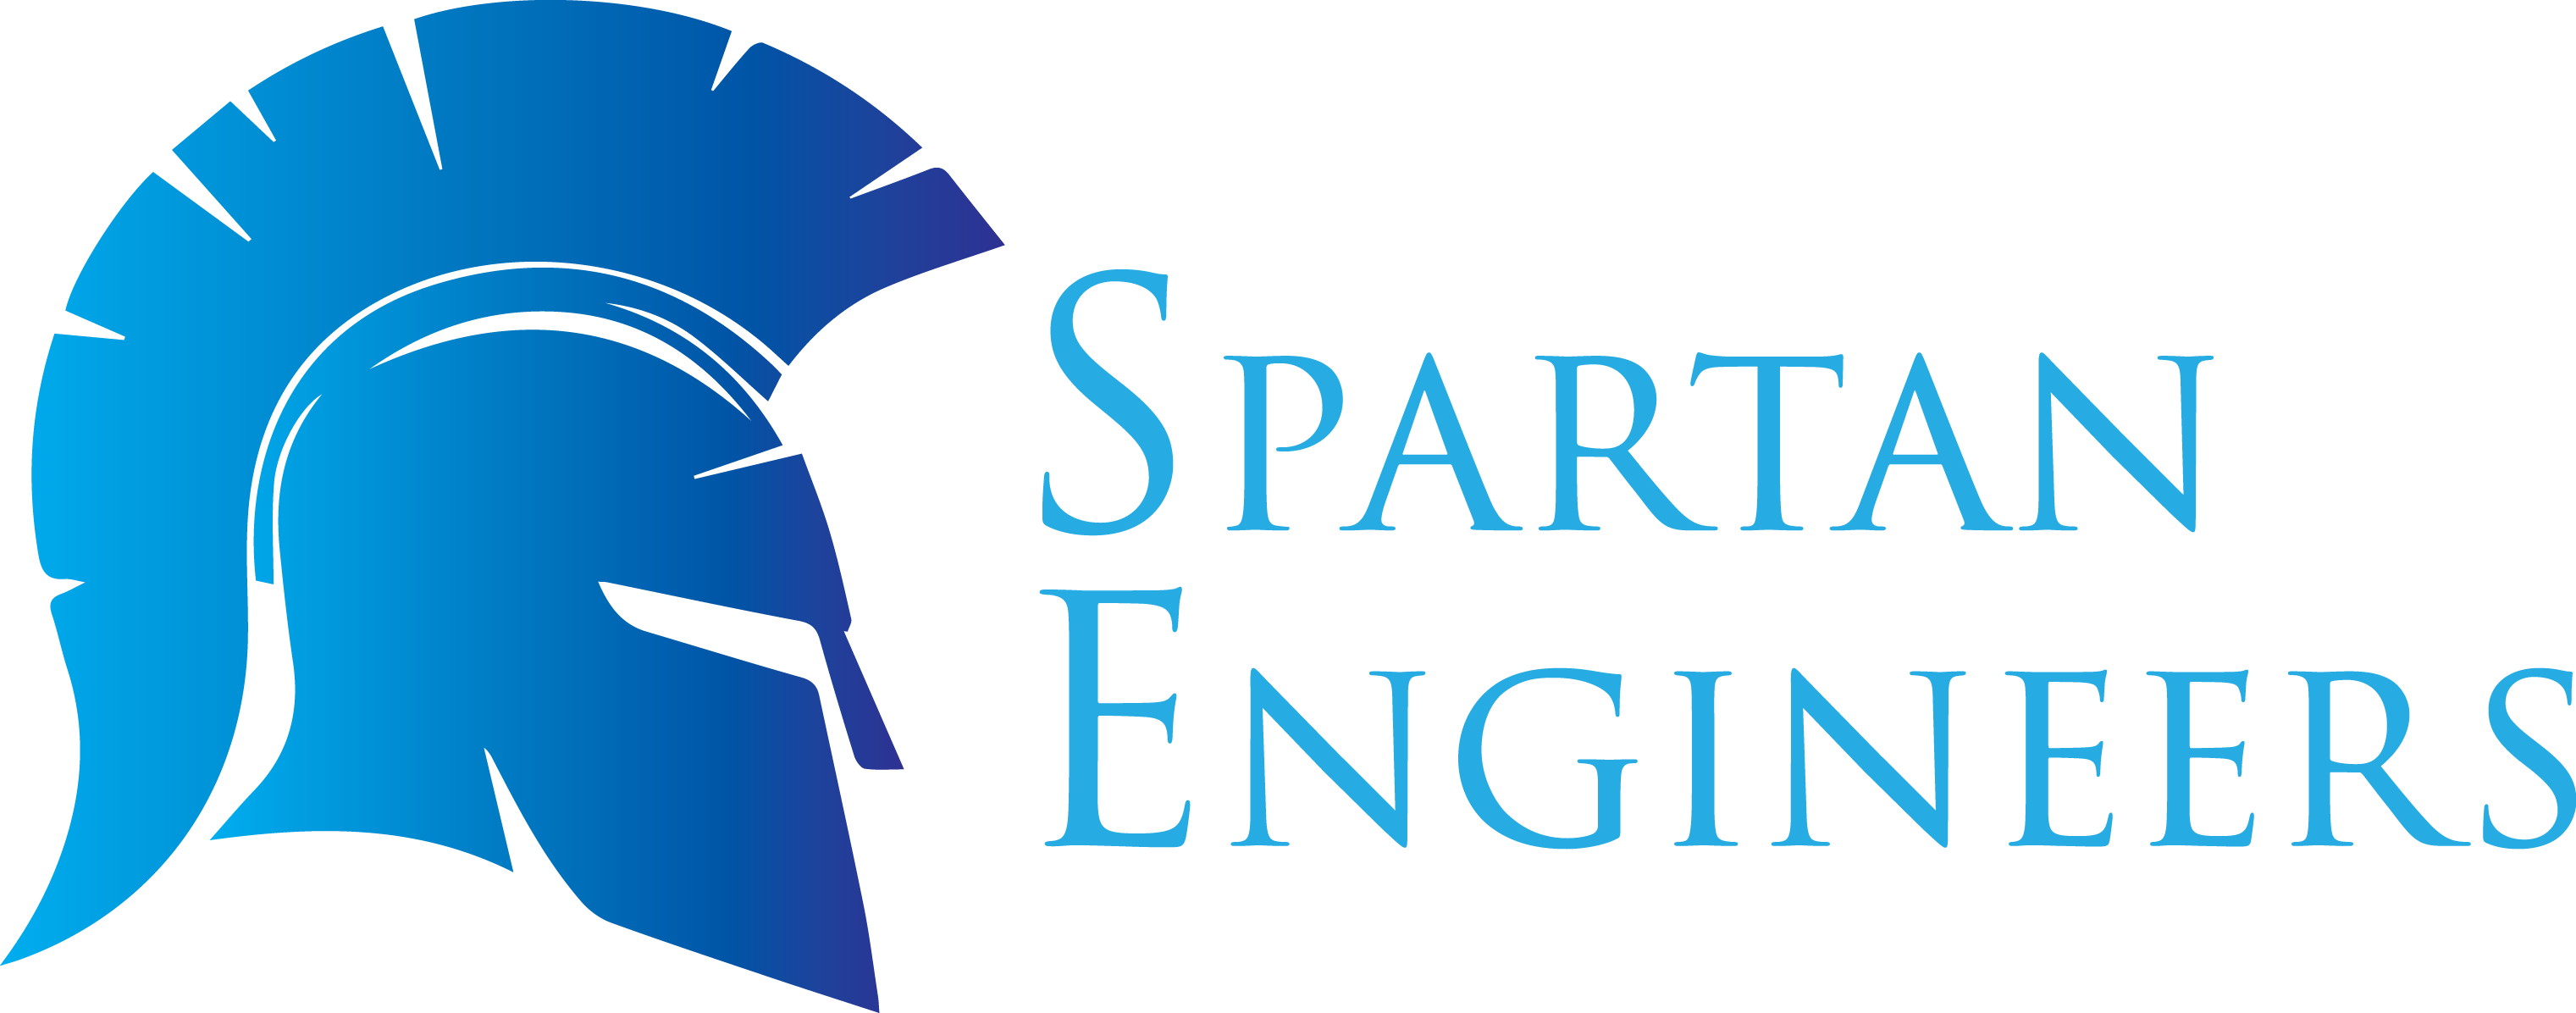 Spartan Engineers